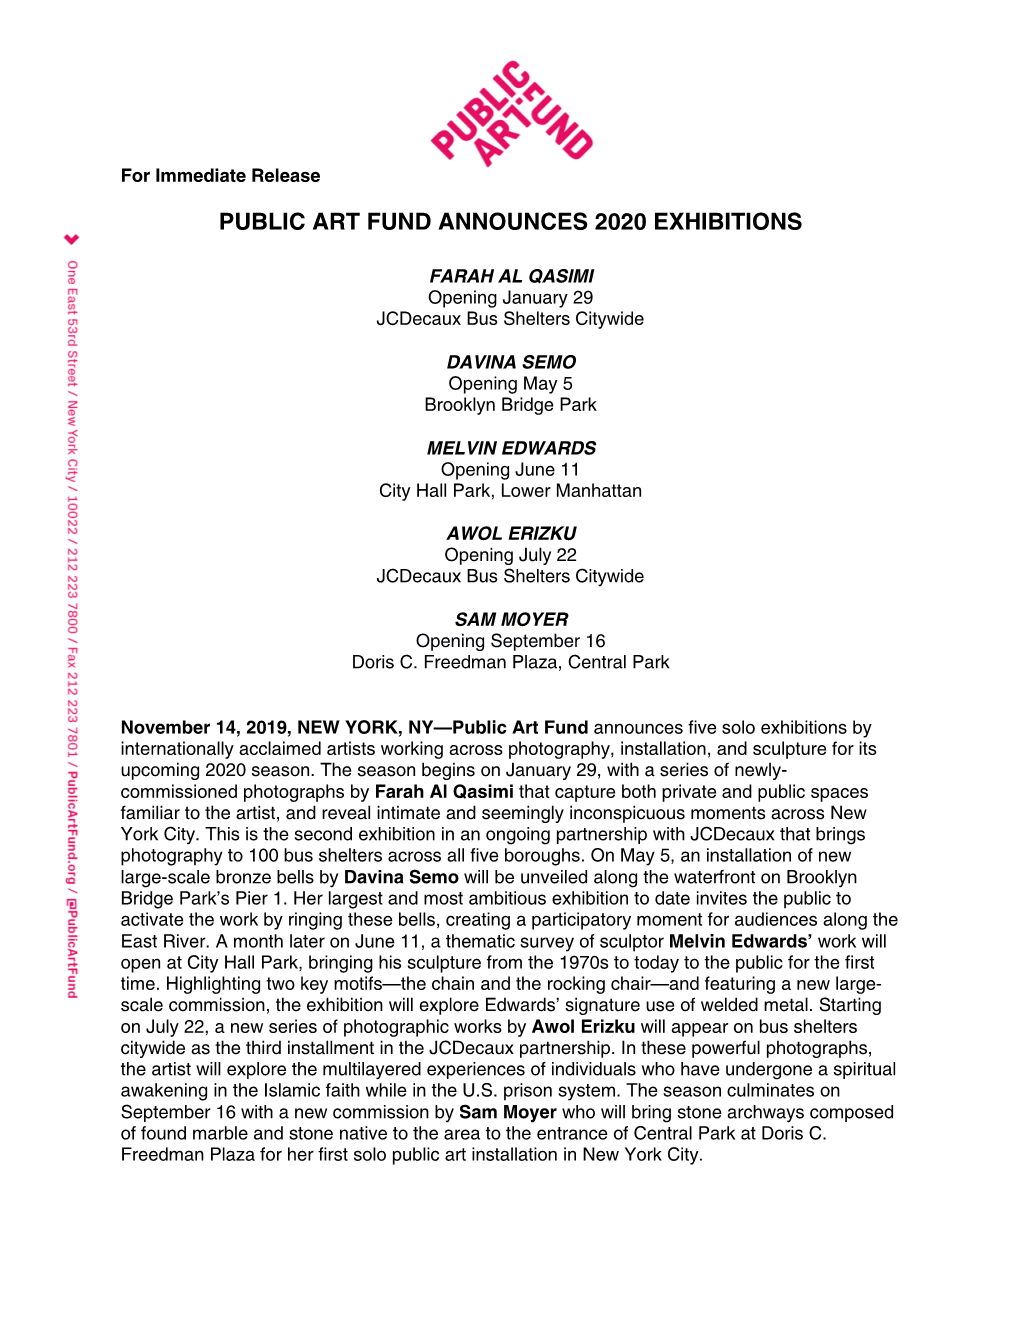 Public Art Fund Announces 2020 Exhibitions